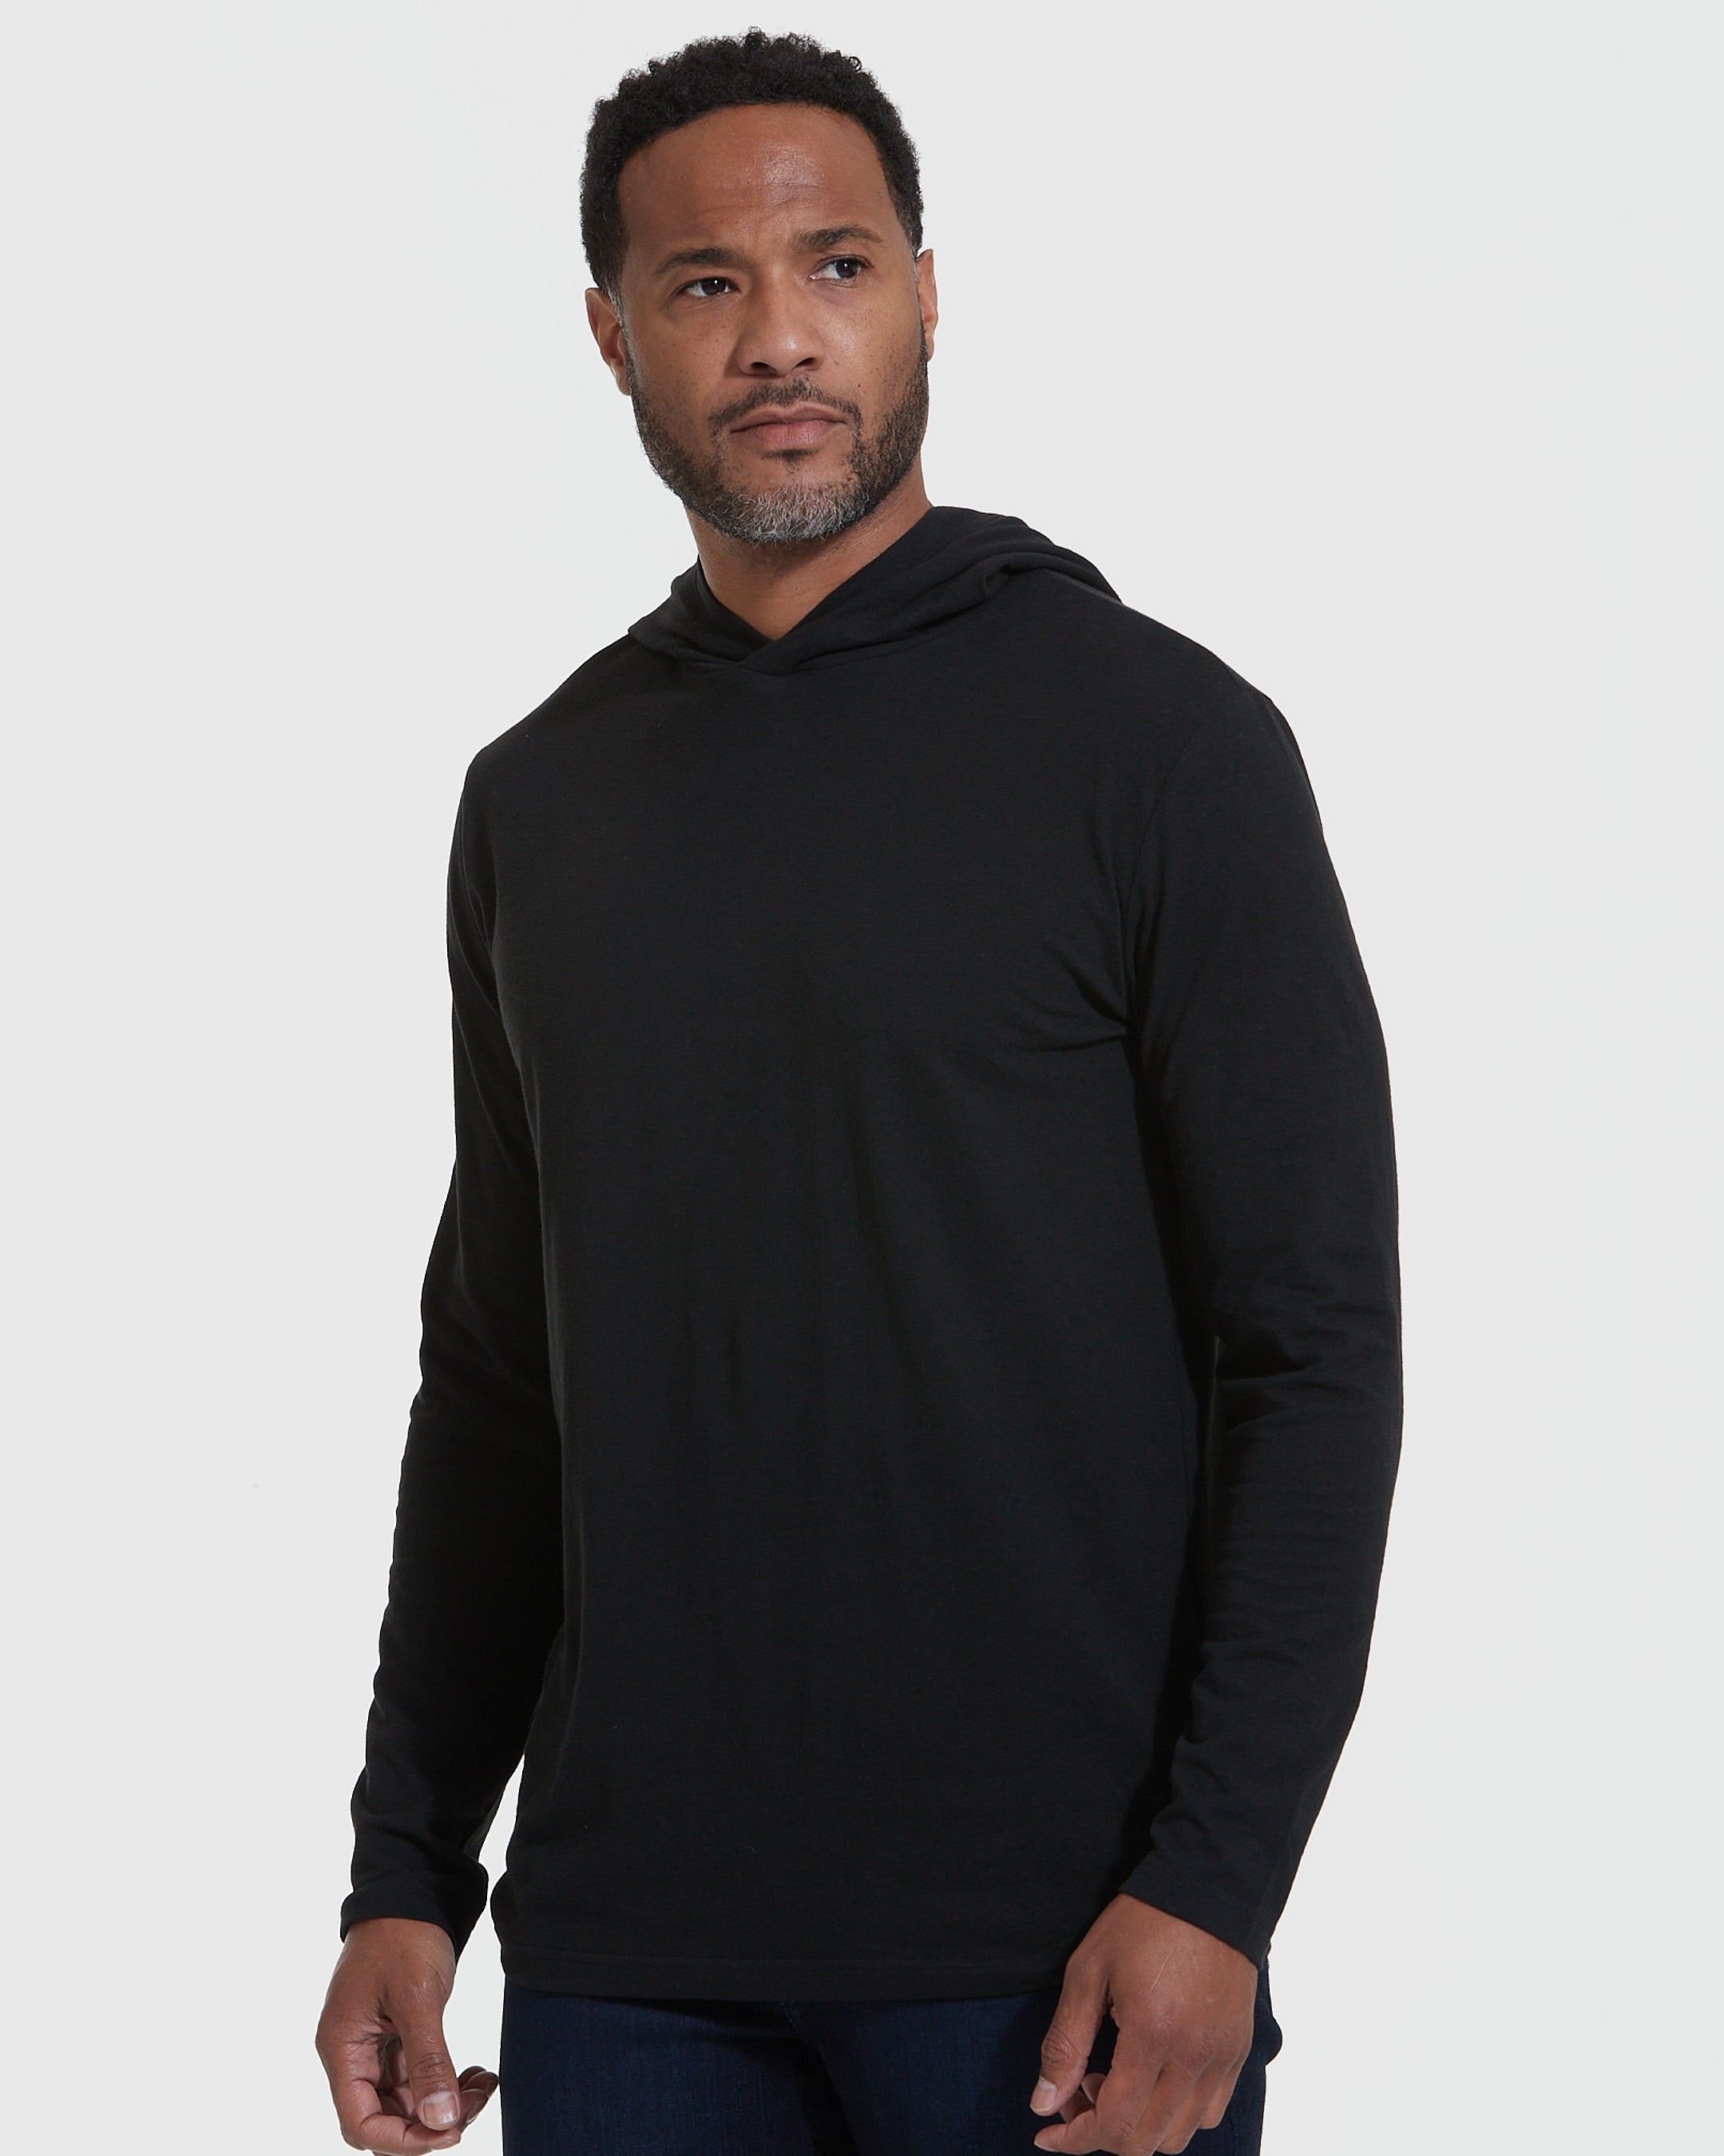 Black Hooded Long Sleeve T-Shirt, Men's Black Hooded Long Sleeve T-Shirt